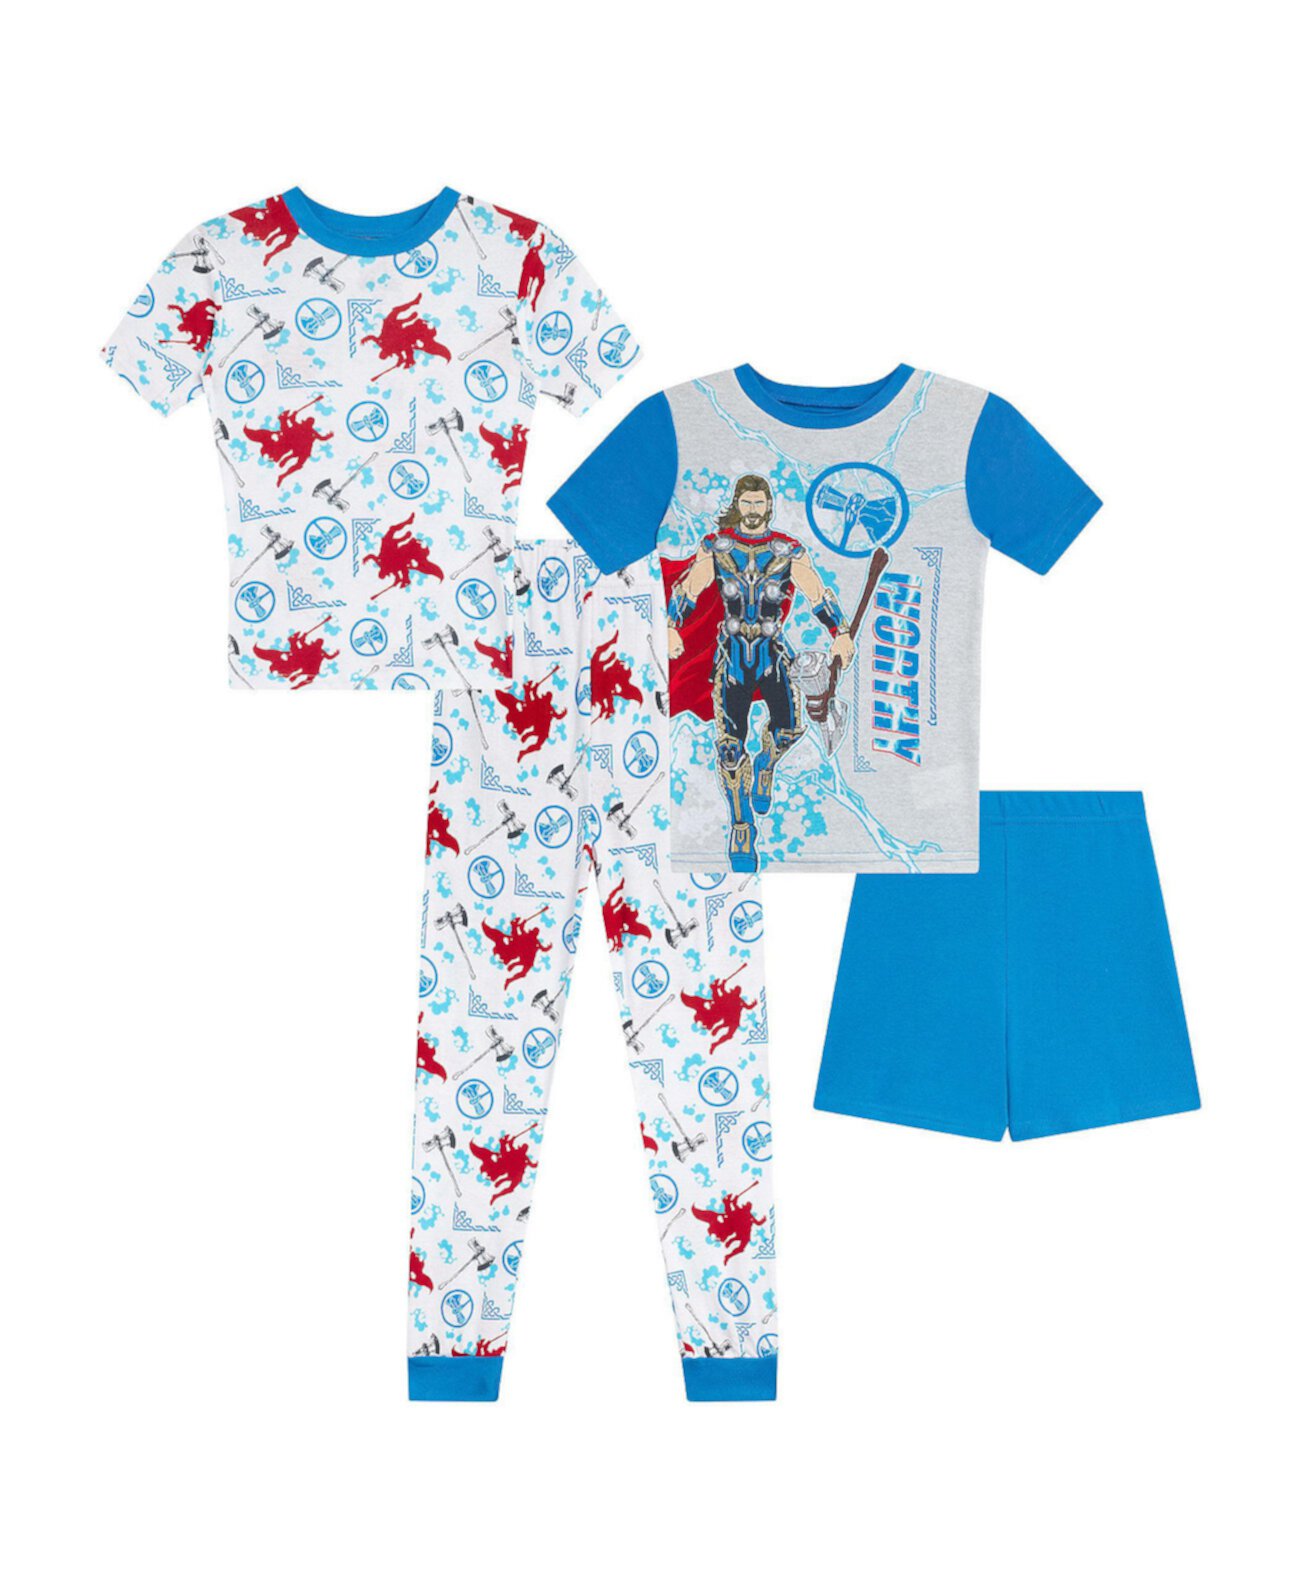 Футболки, пижамы и шорты для больших мальчиков, комплект из 4 предметов Thor